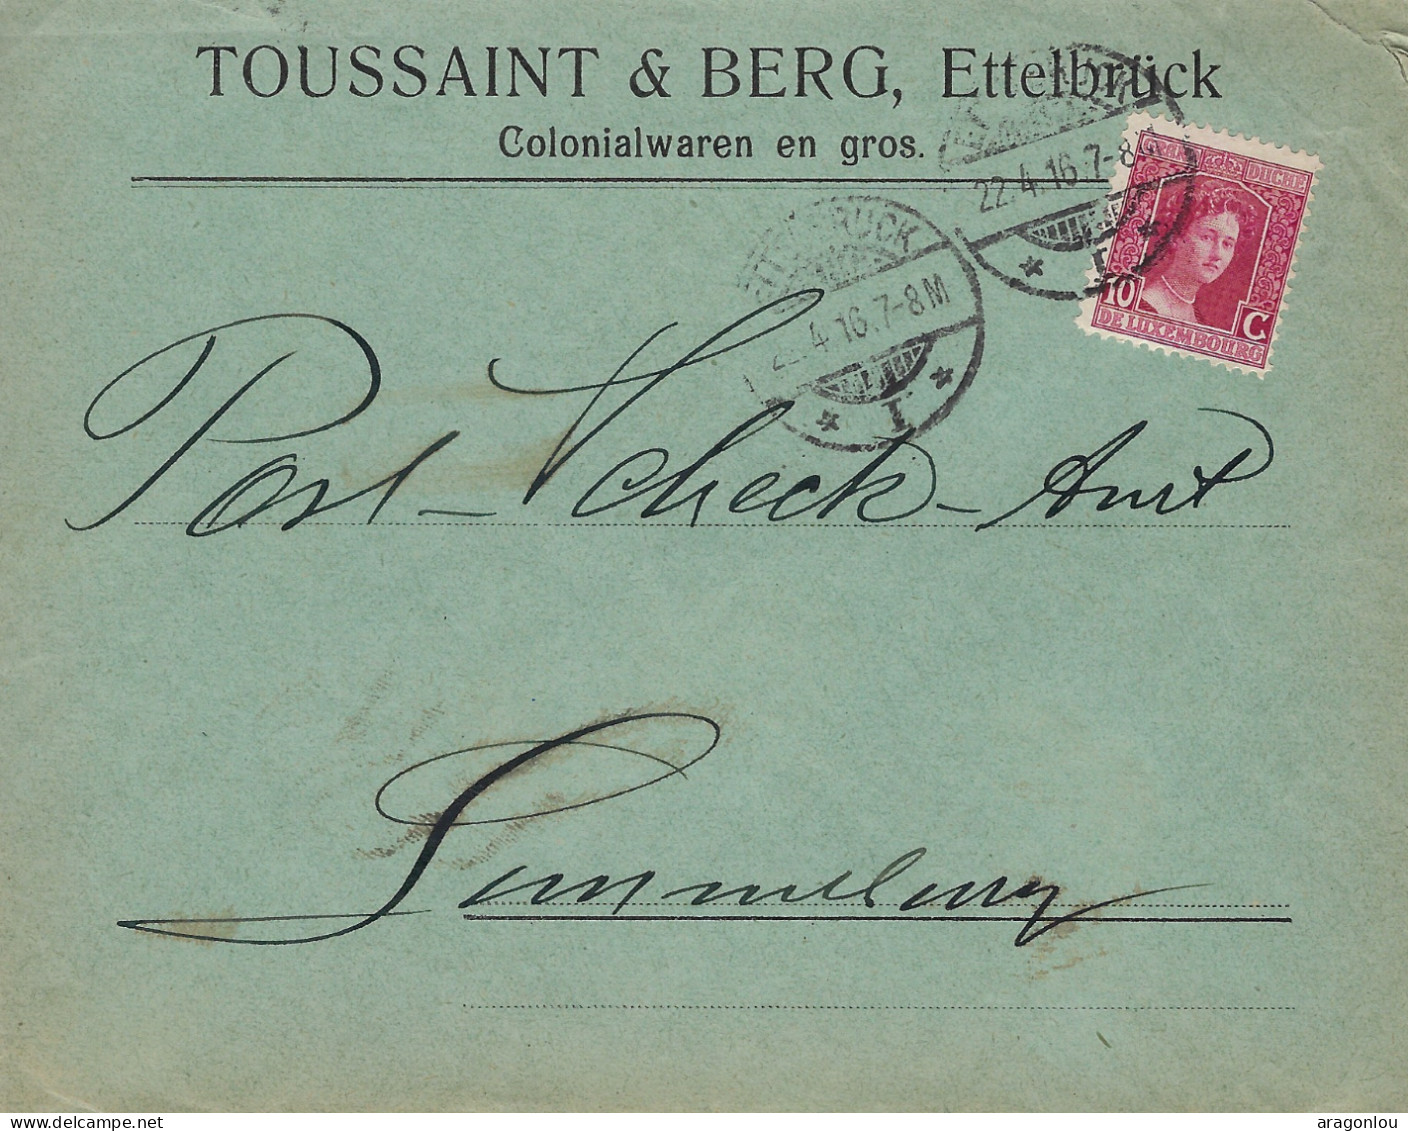 Luxembourg - Luxemburg - Lettre  1916  An Das Post -Scheck-Amt , Luxembourg- Cachet Luxembourg - Covers & Documents